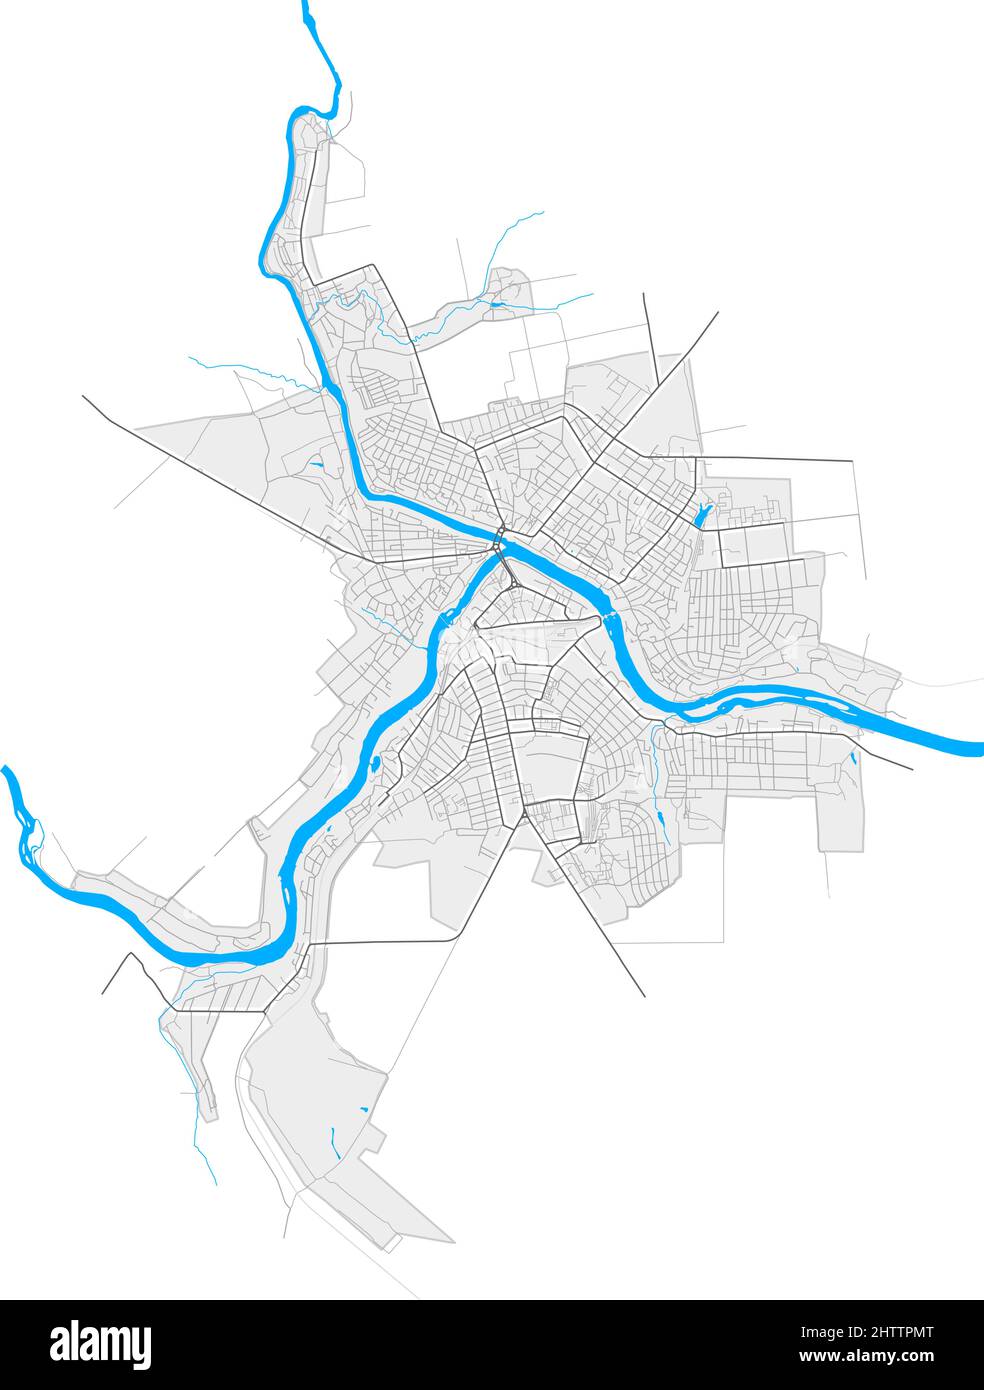 Pervomaisk, Oblast Mykolaiv, Ukraine hochauflösende Vektorkarte mit Stadtgrenzen und umrissenen Pfaden. Weiße zusätzliche Umrisse für Hauptstraßen. Mann Stock Vektor